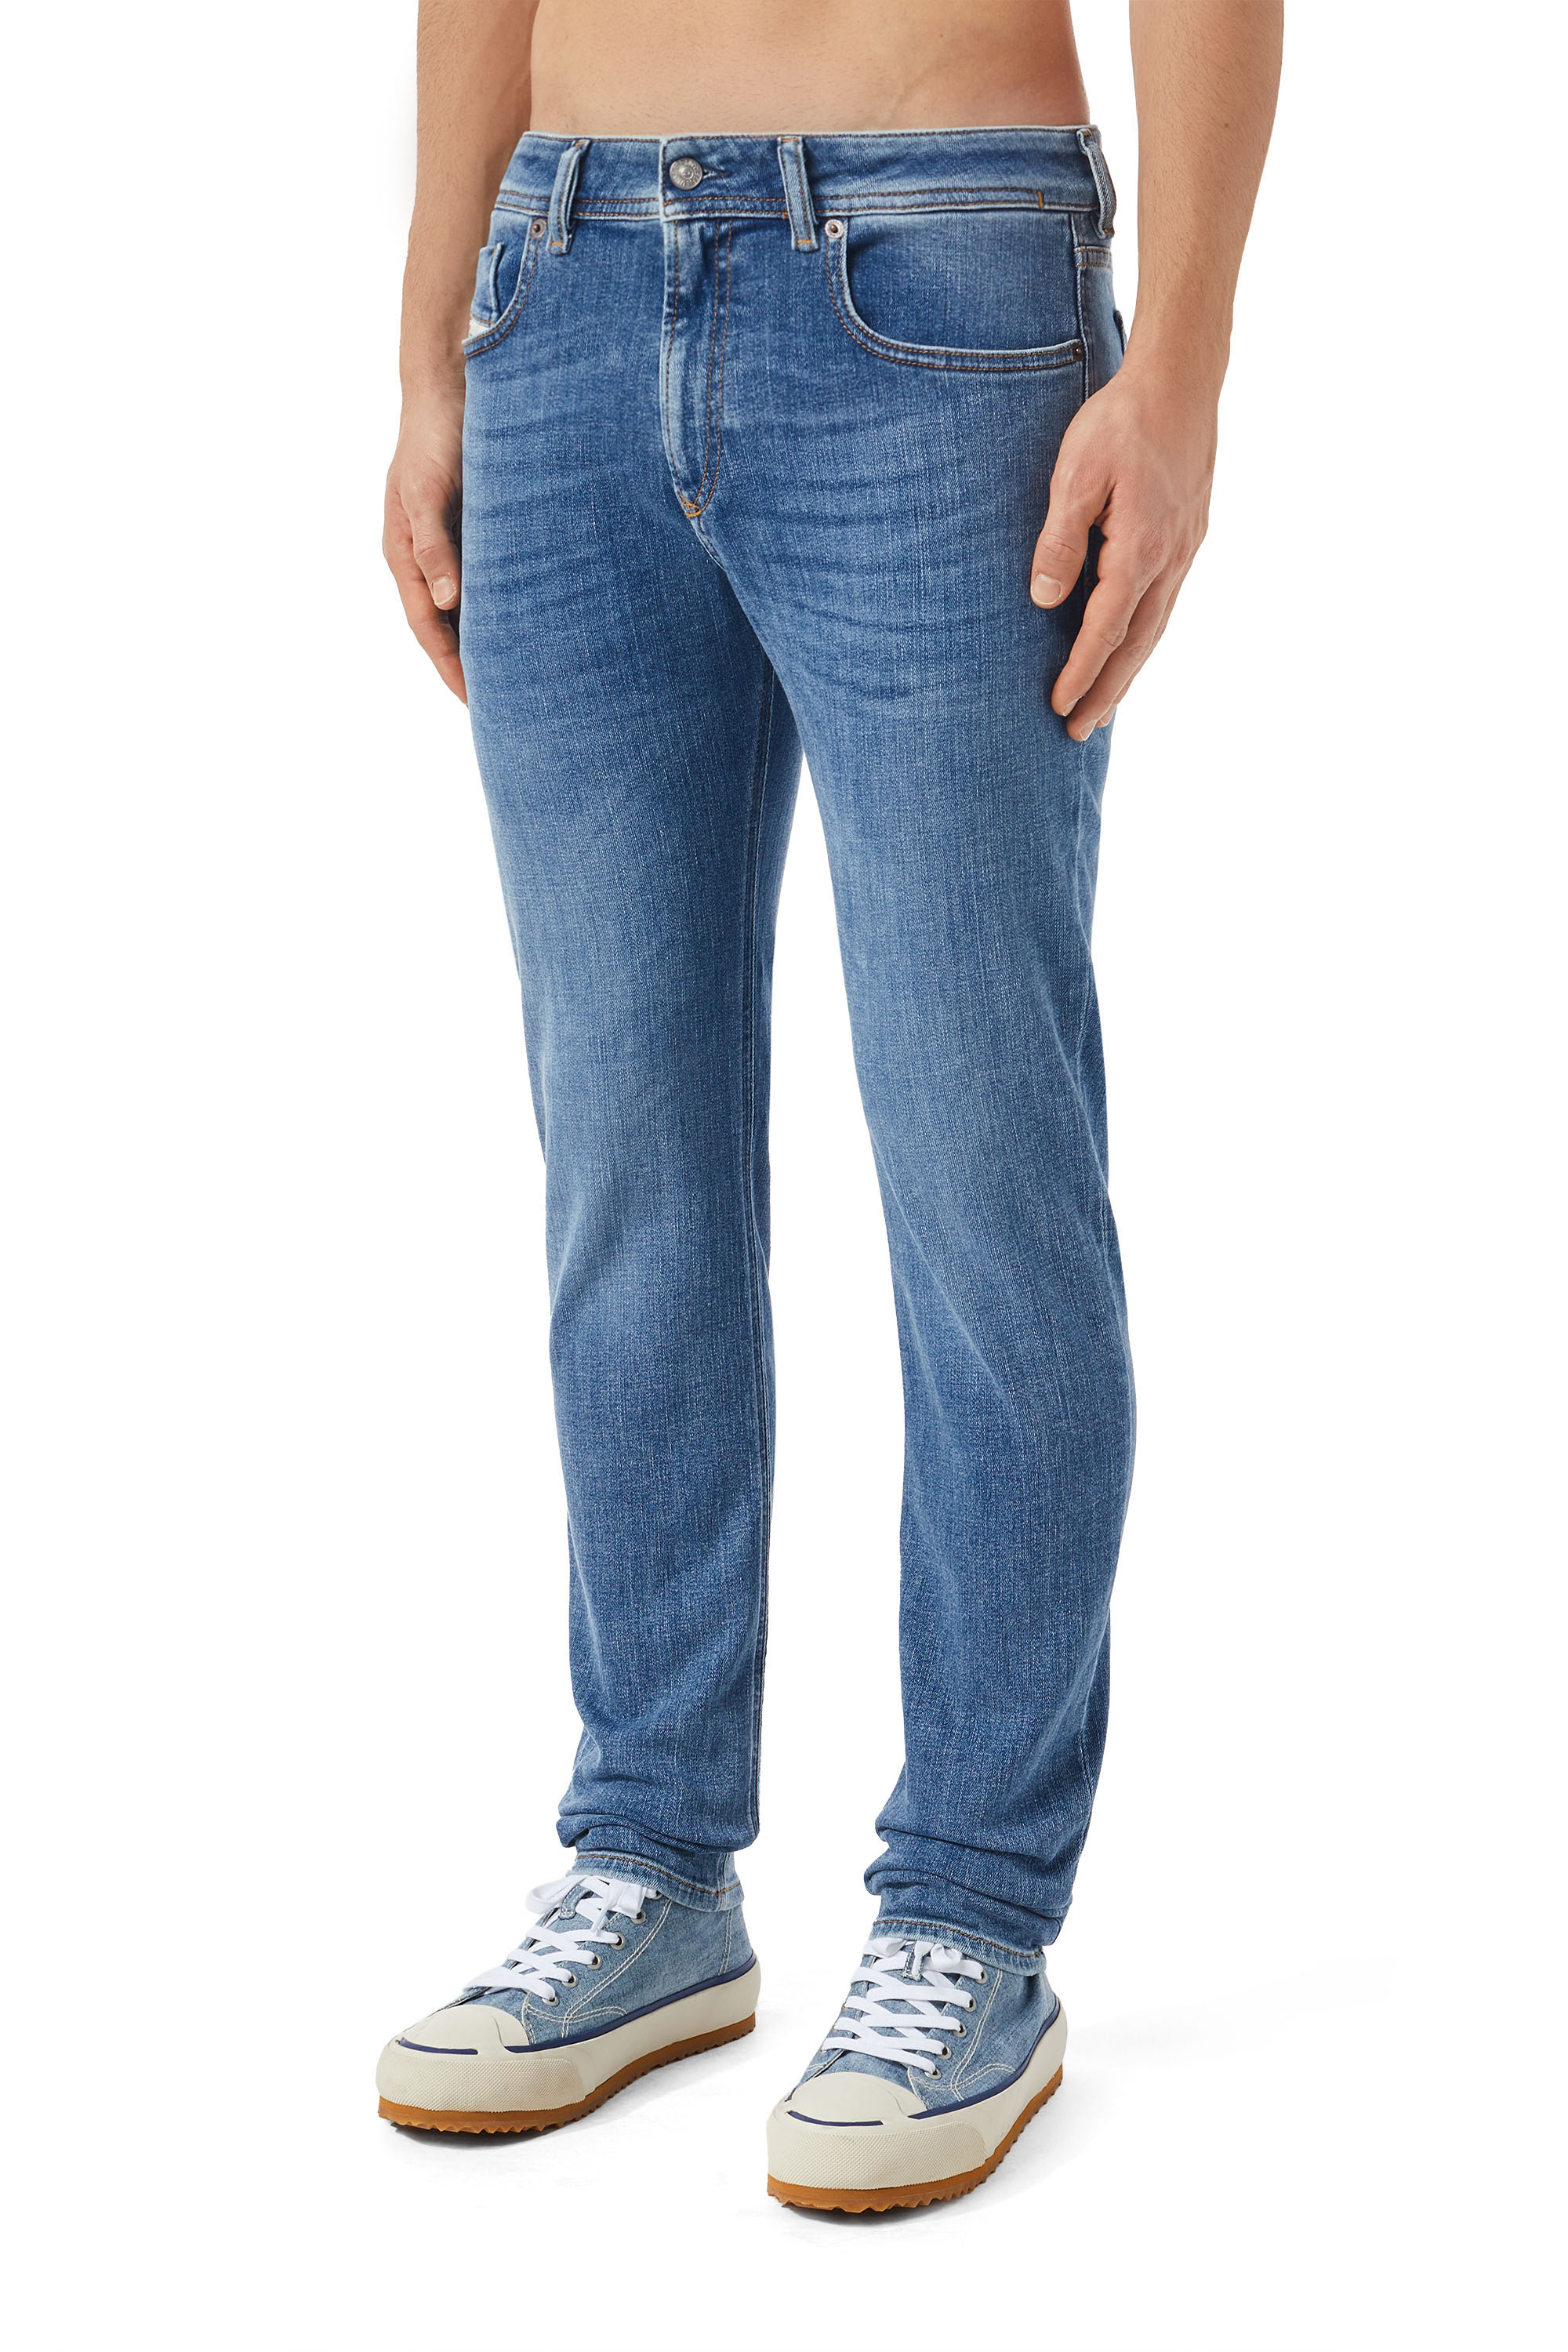 Diesel - Skinny Jeans 1979 Sleenker 09C01,  - Image 5